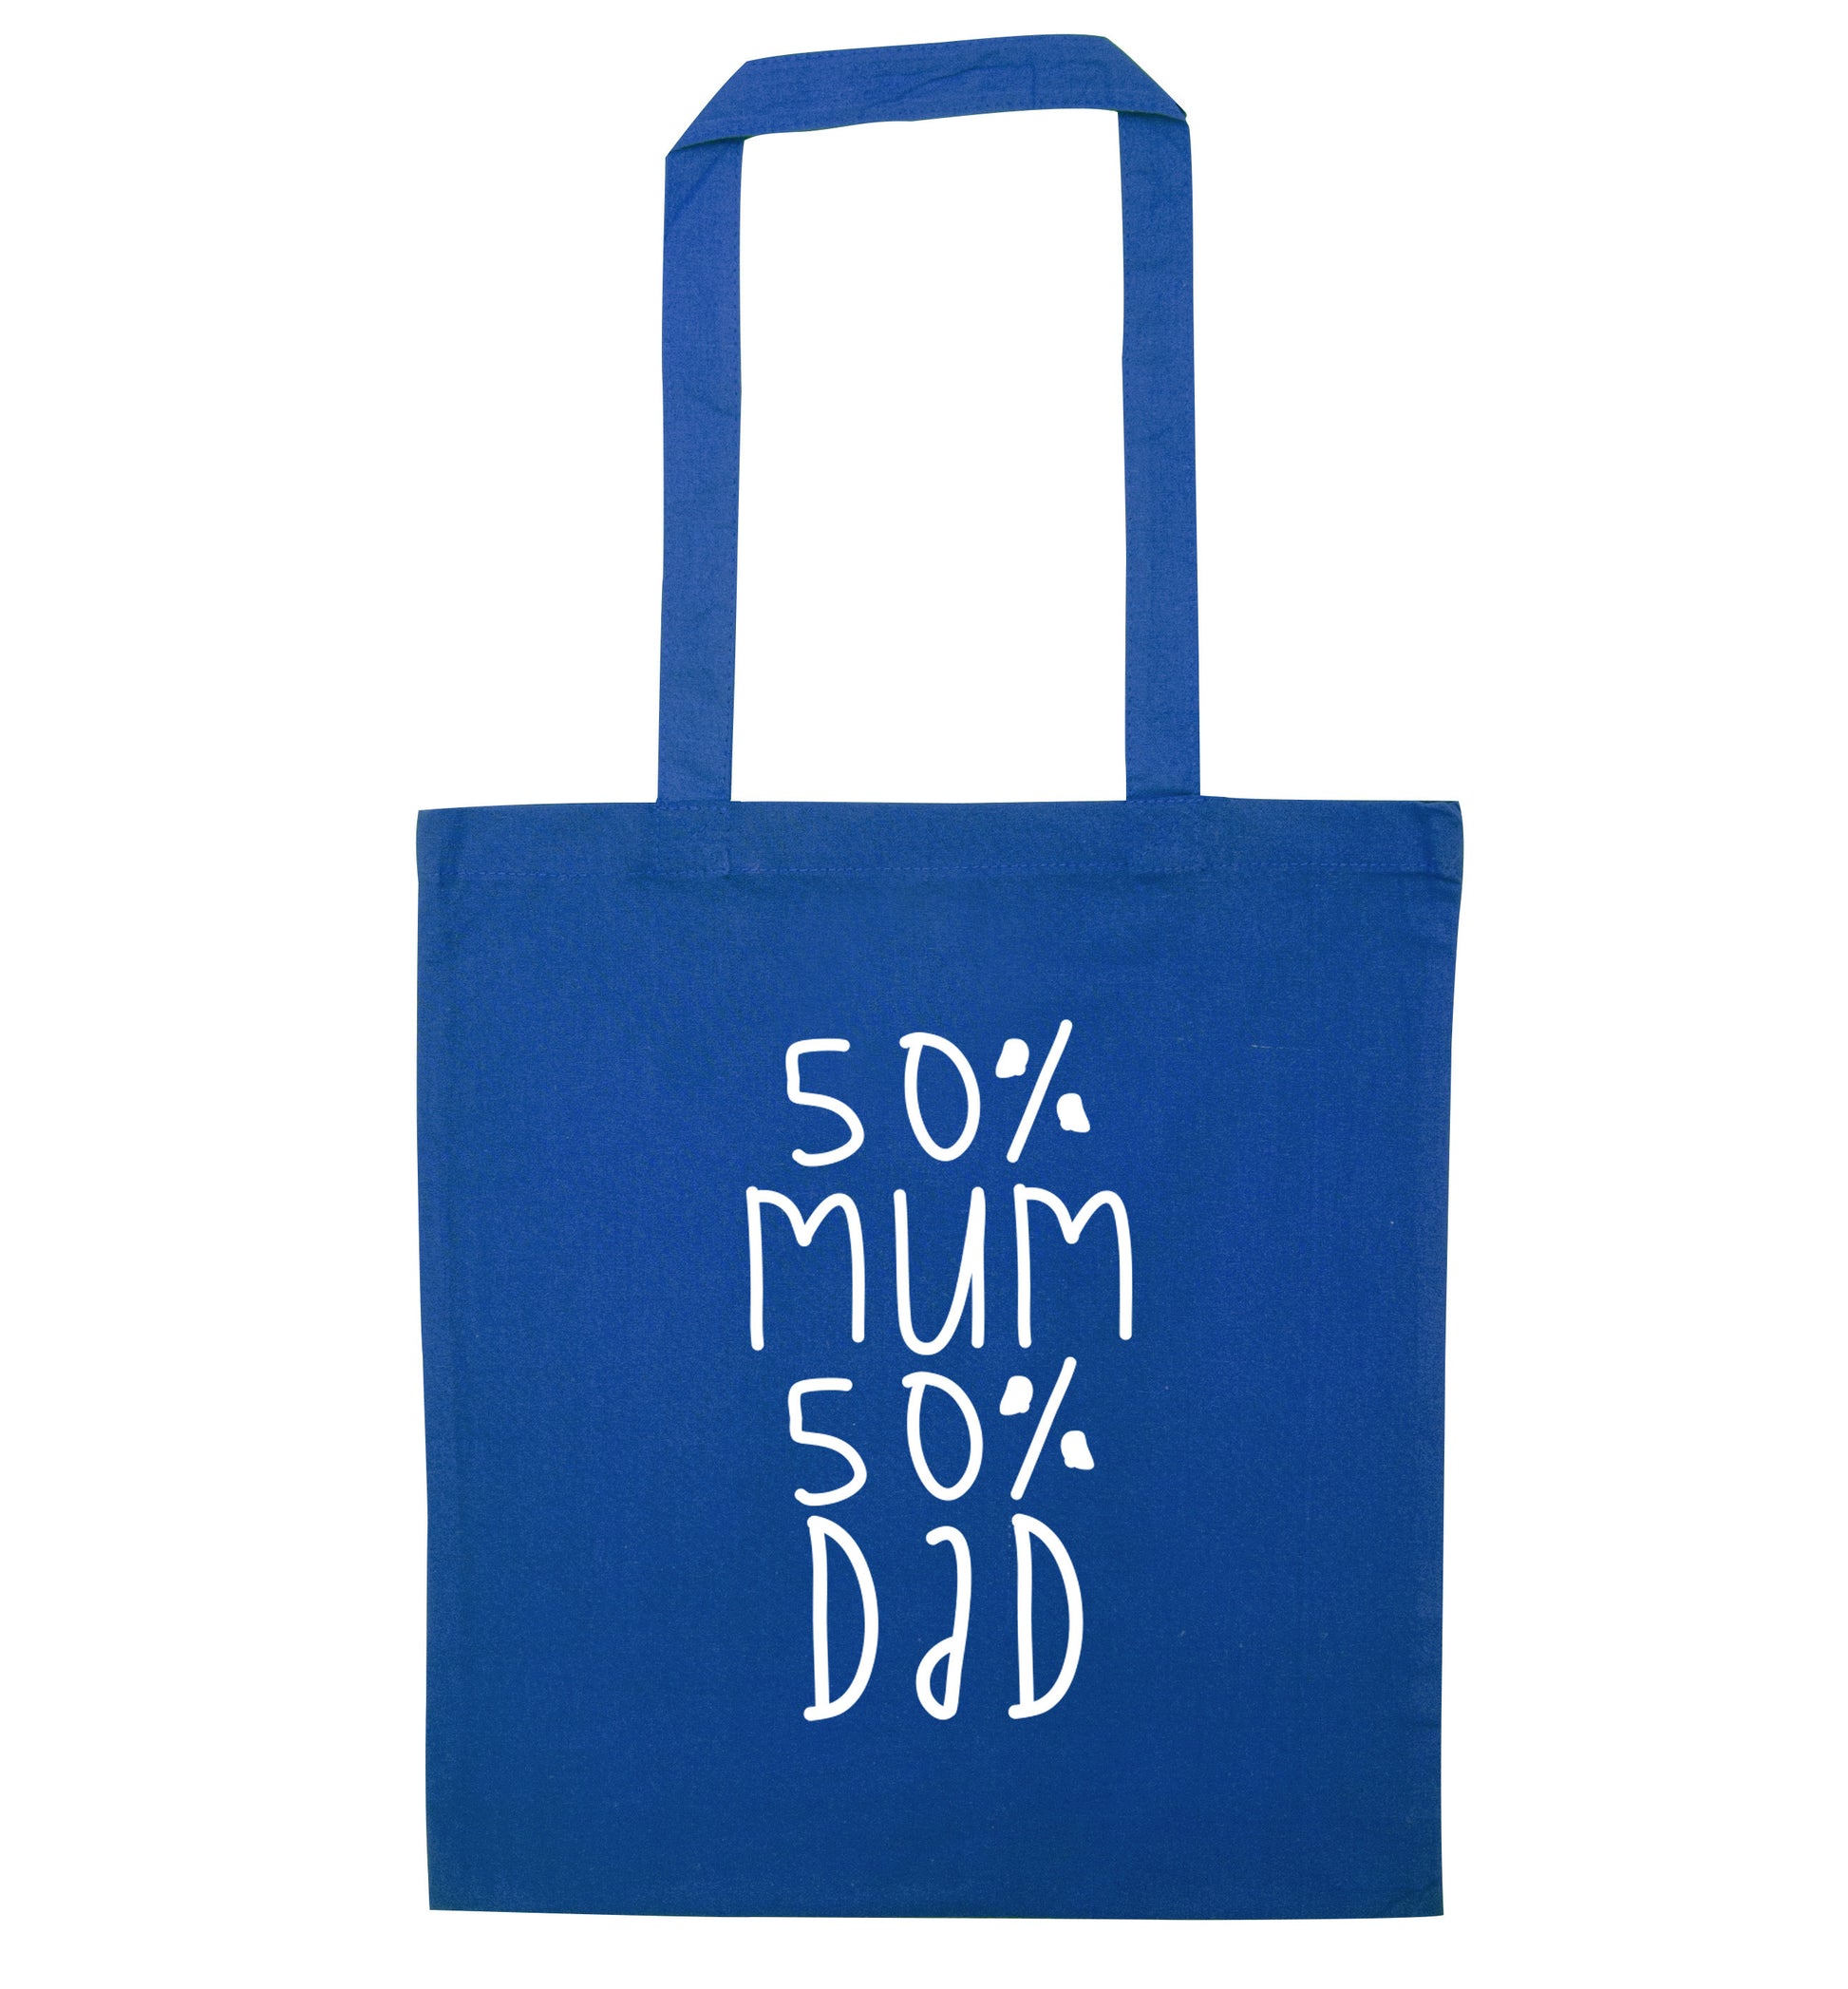 50% mum 50% dad blue tote bag